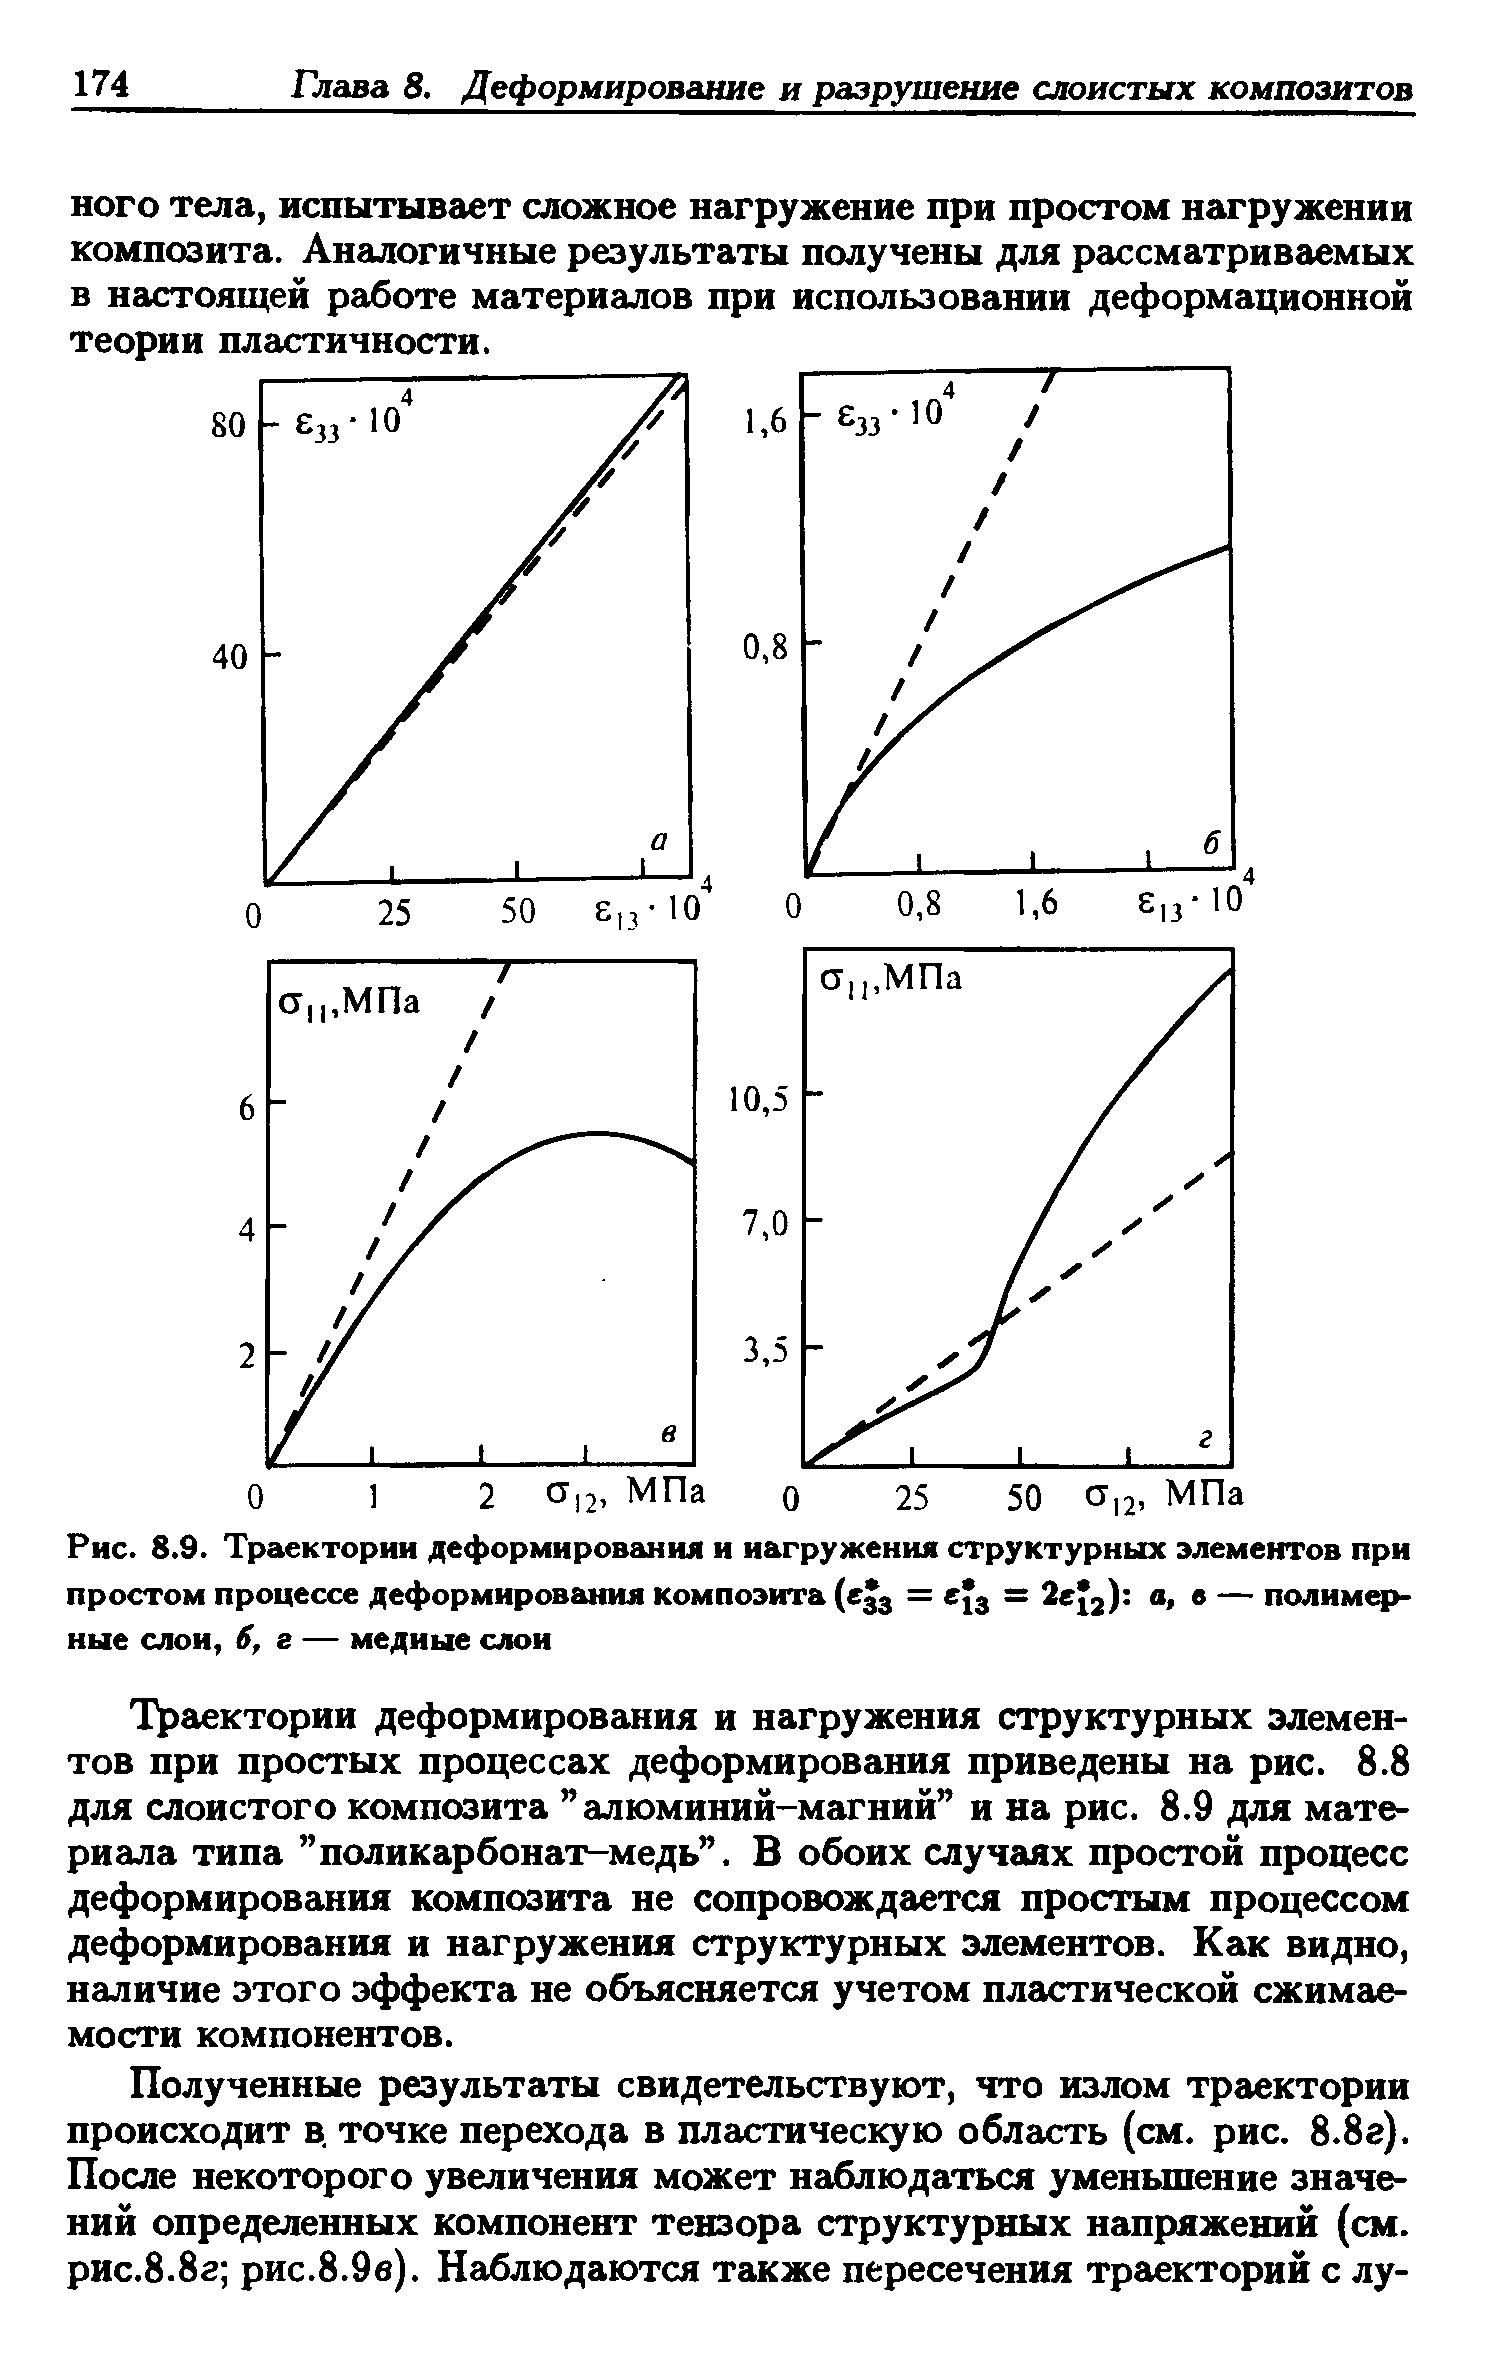 Рис. 8.9. Траектории деформирования и нагружения структурных элементов при простом процессе деформирования композита ( 33 = е з = 2е 2) а, в — полимерные слои, 6, г — медные слон
